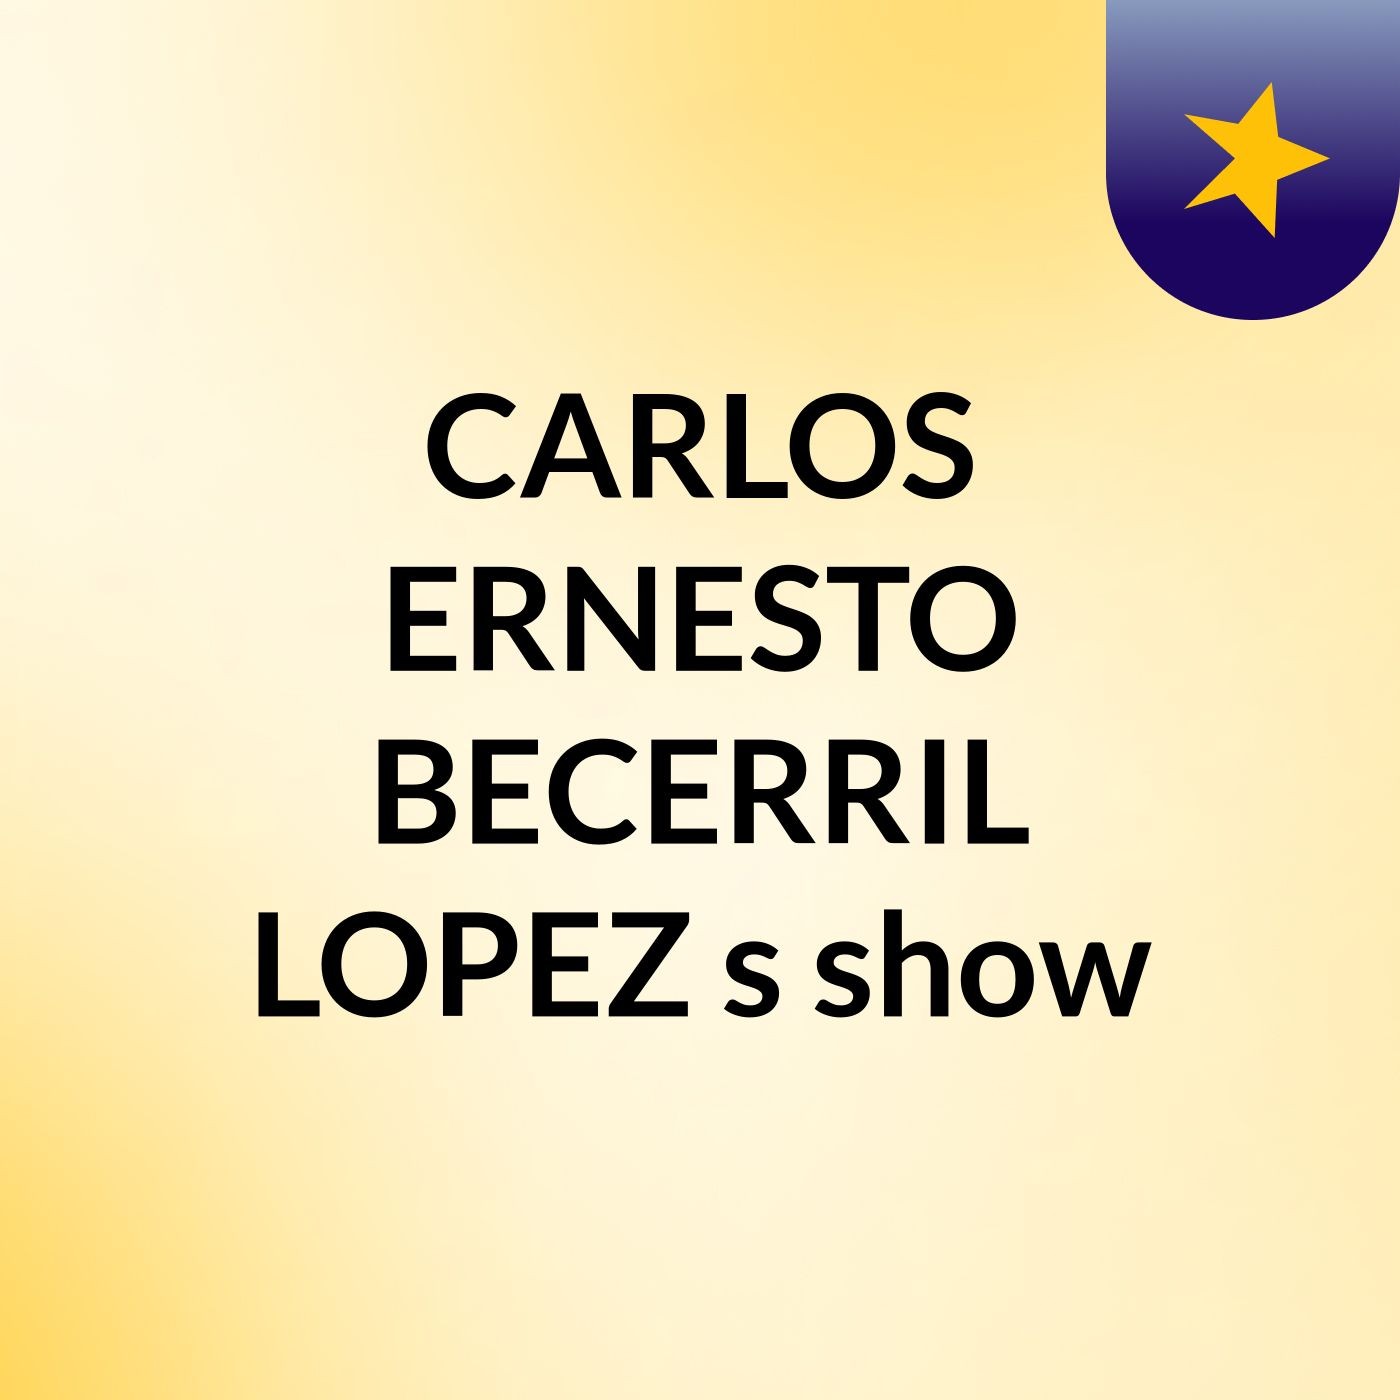 CARLOS ERNESTO BECERRIL LOPEZ's show